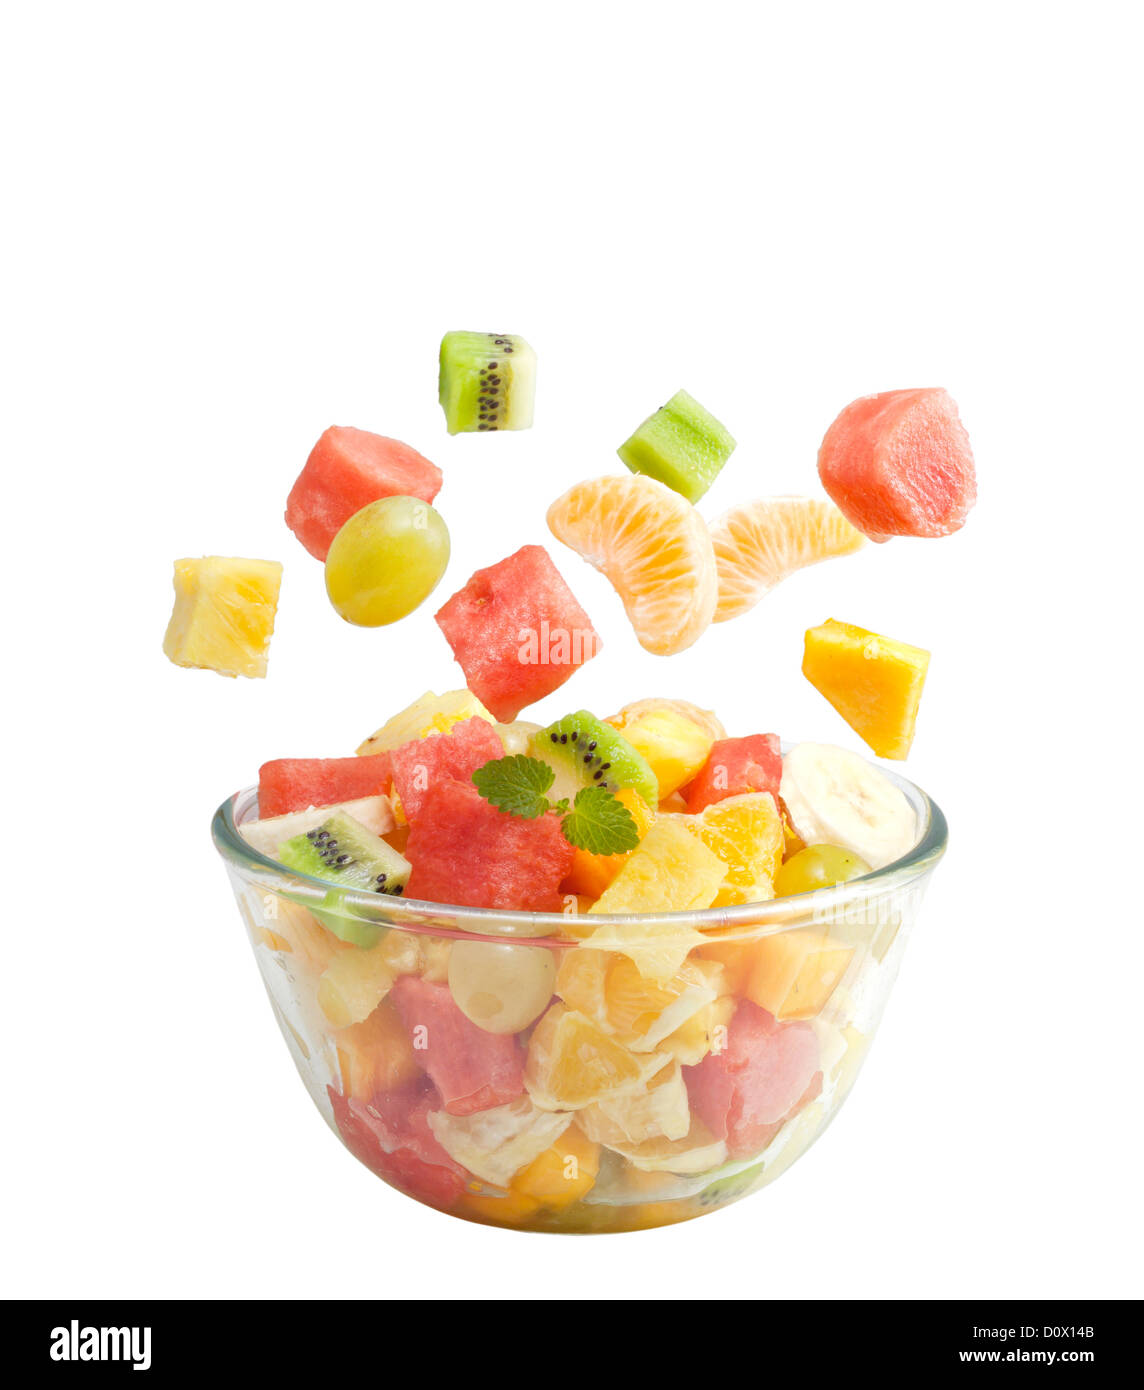 Salade de Fruits au bol isolé sur fond blanc Banque D'Images